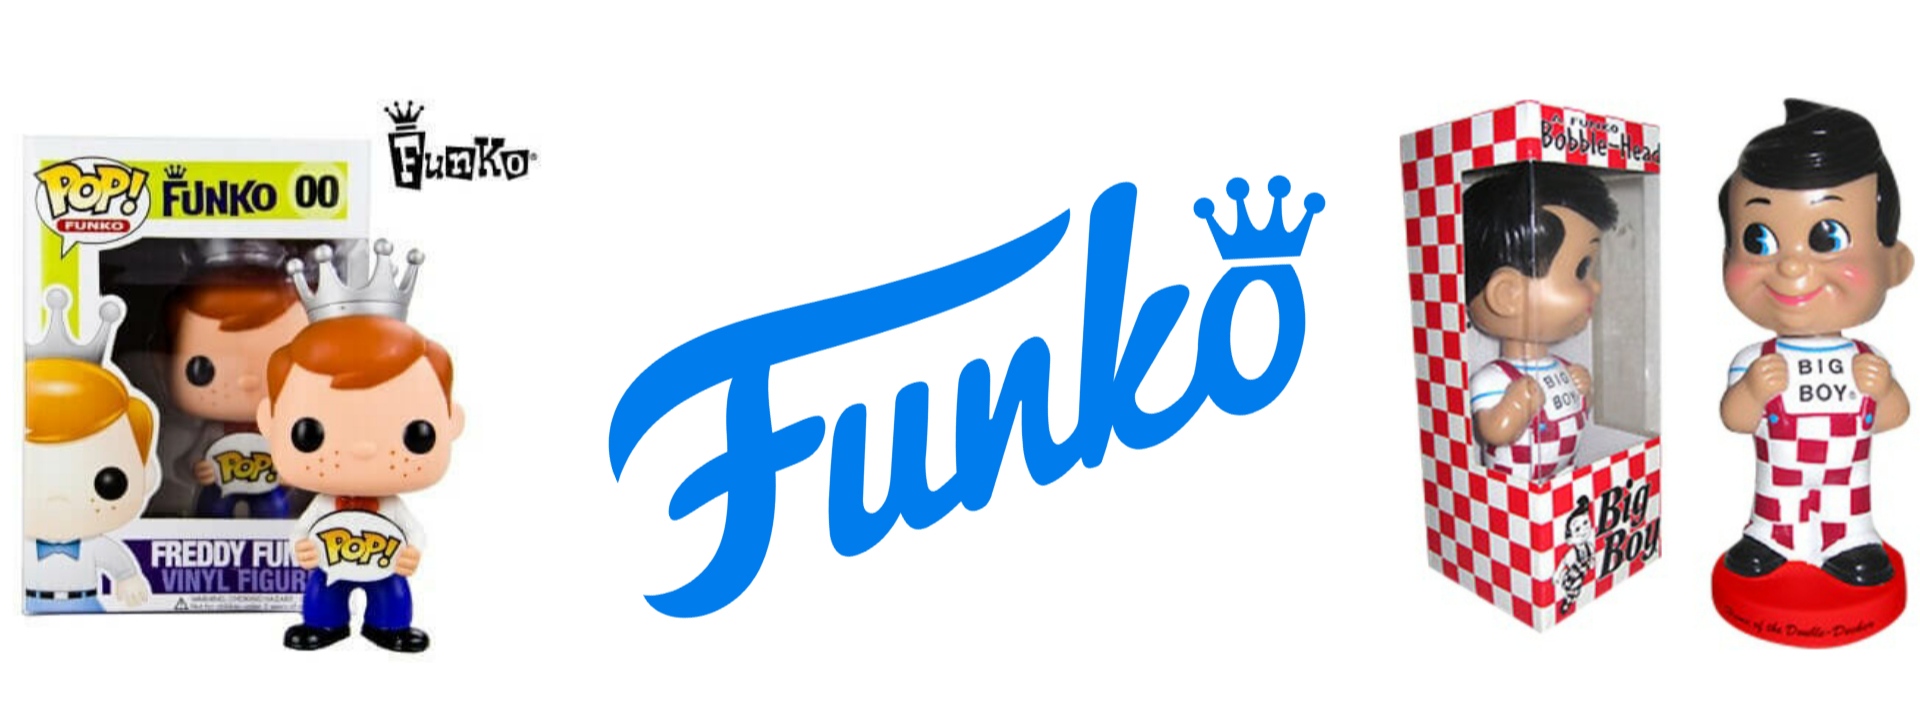 Comprar Funko Pop en Madrid y online - Empiezadores! - Empiezadores